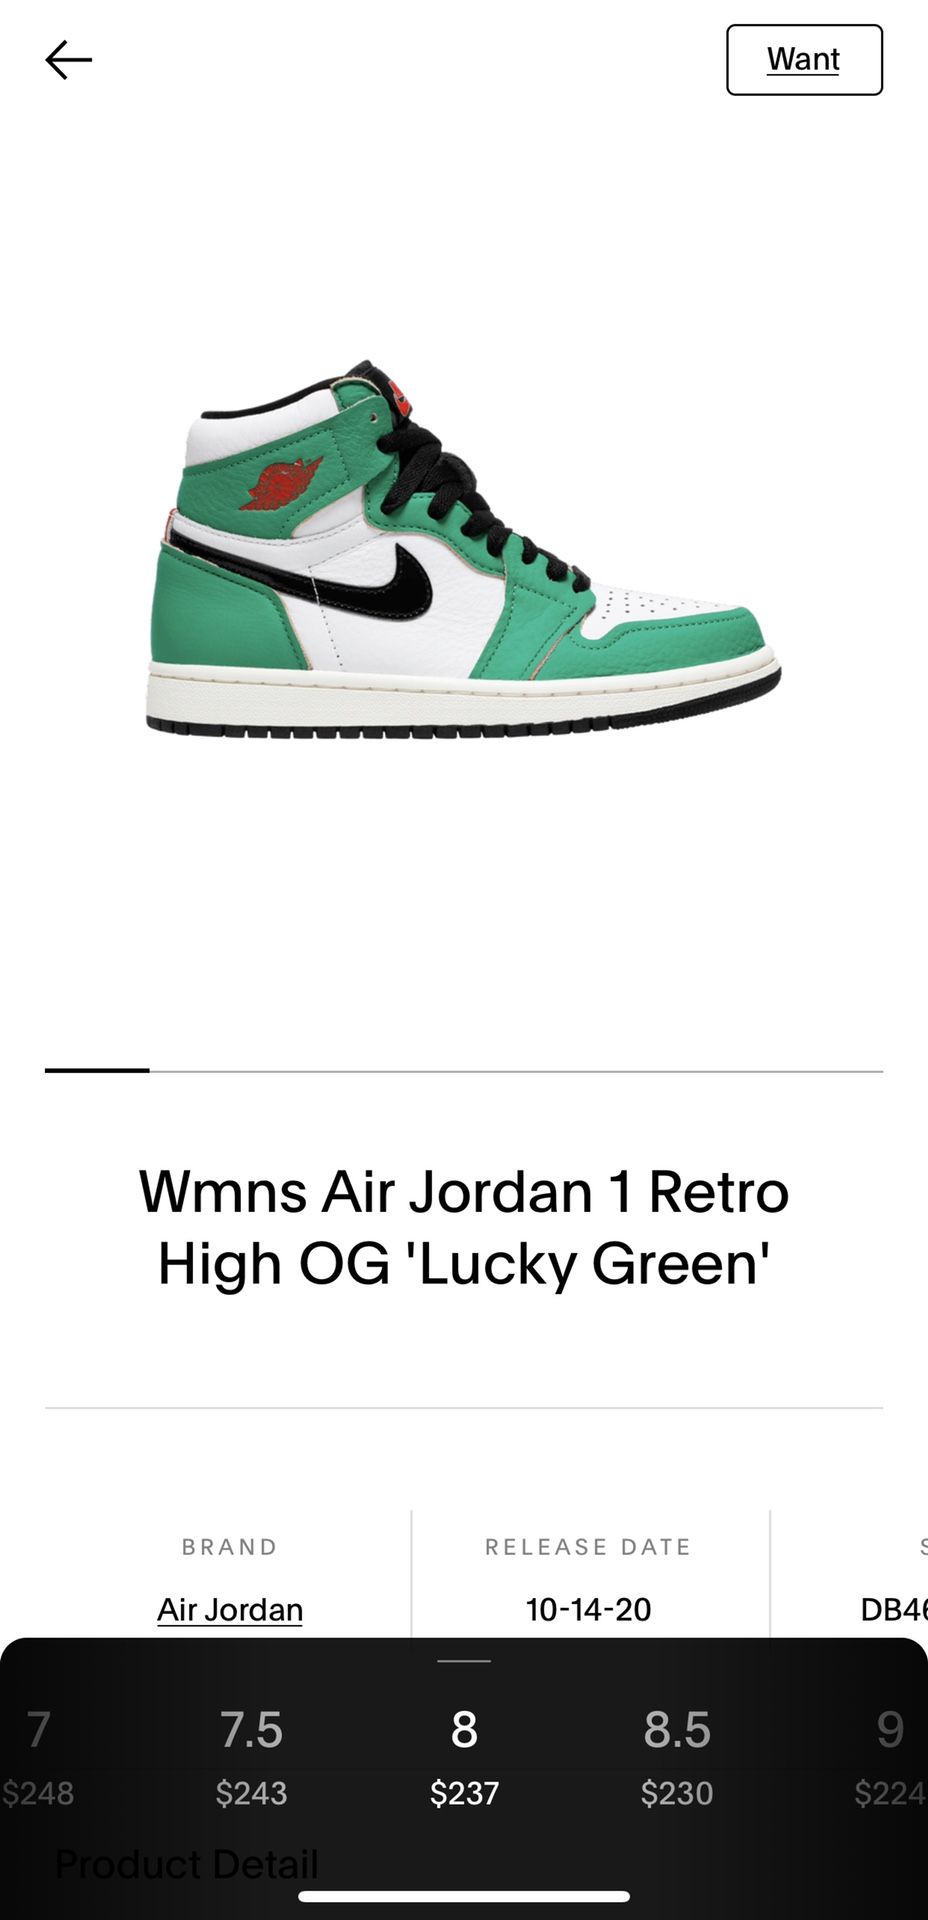 Woman’s Air Jordan 1 Retro High OG ‘Lucky Green’